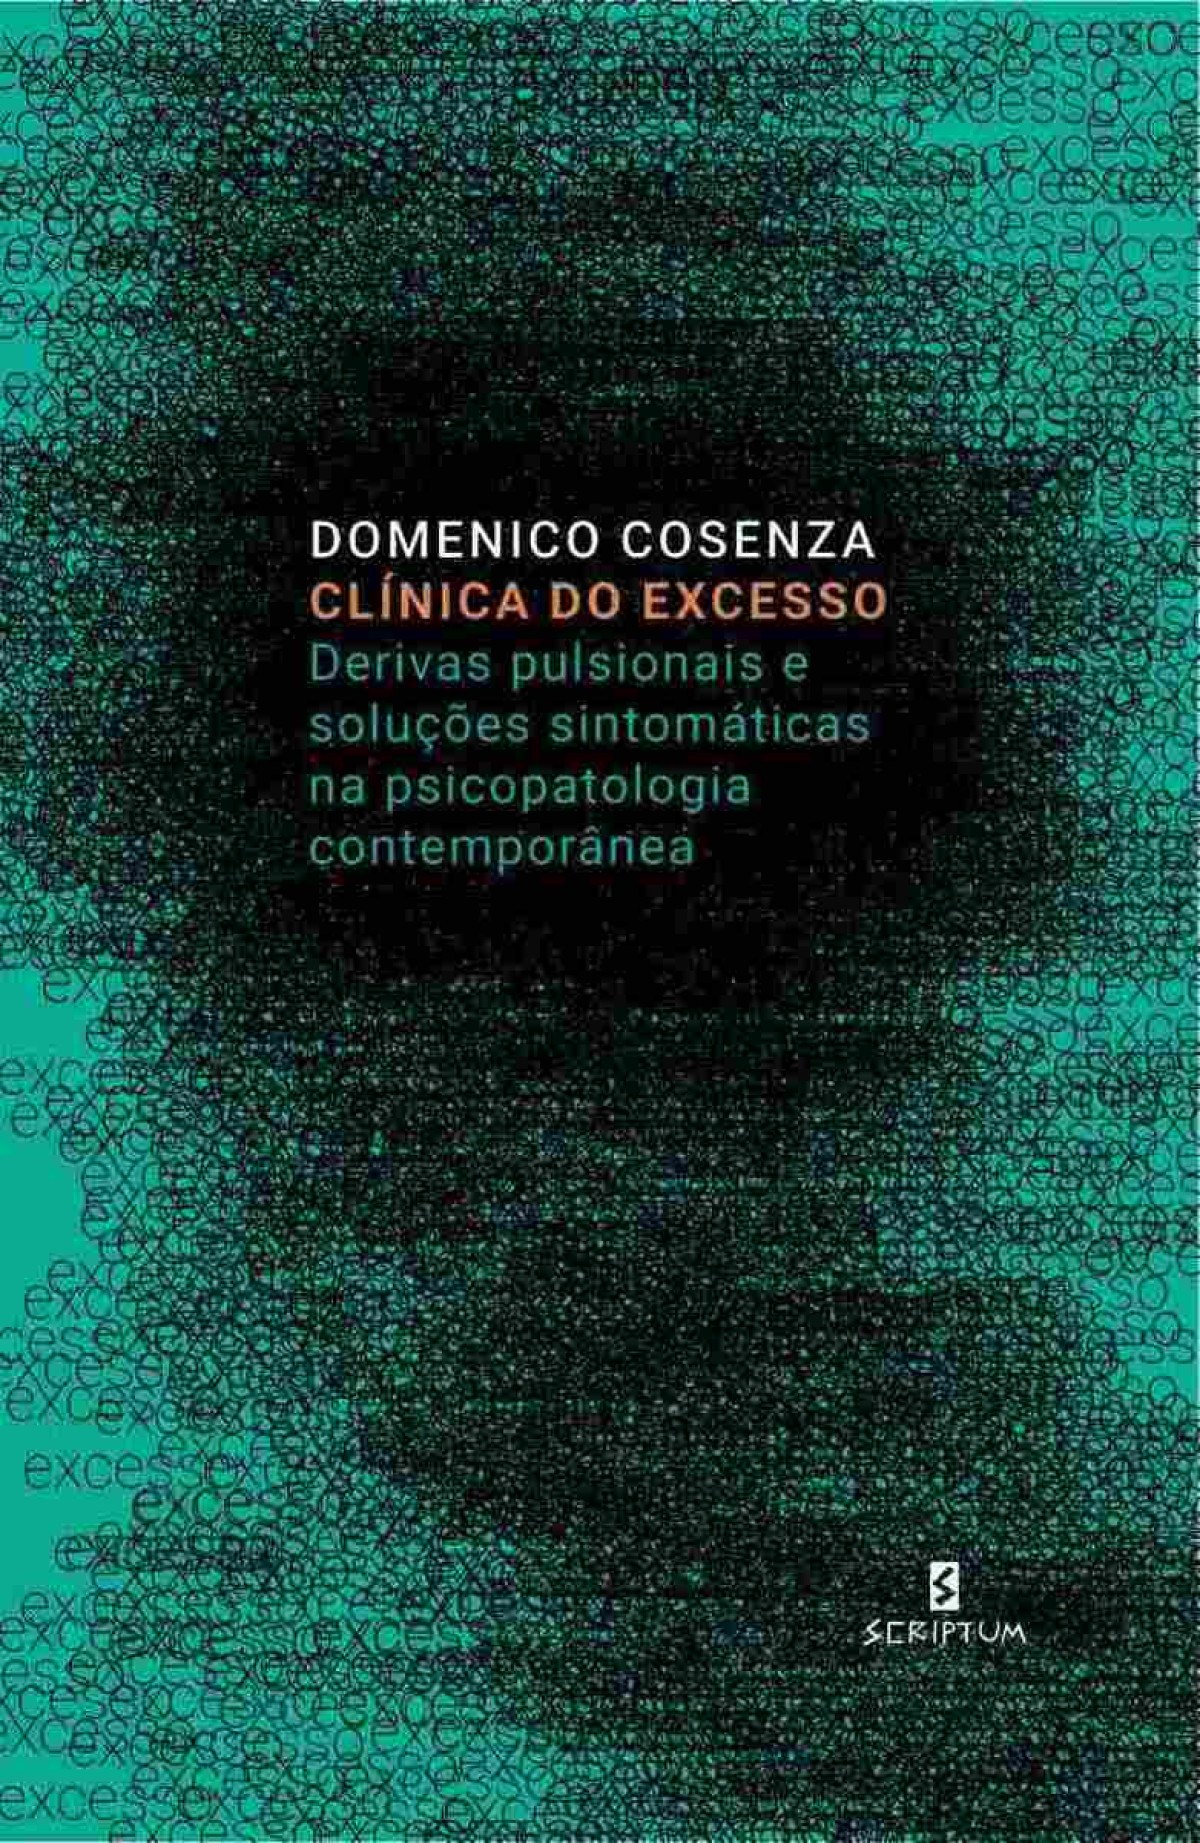 Psicanalista italiano lança, em BH, livro sobre os ‘excessos da contemporaneidade’